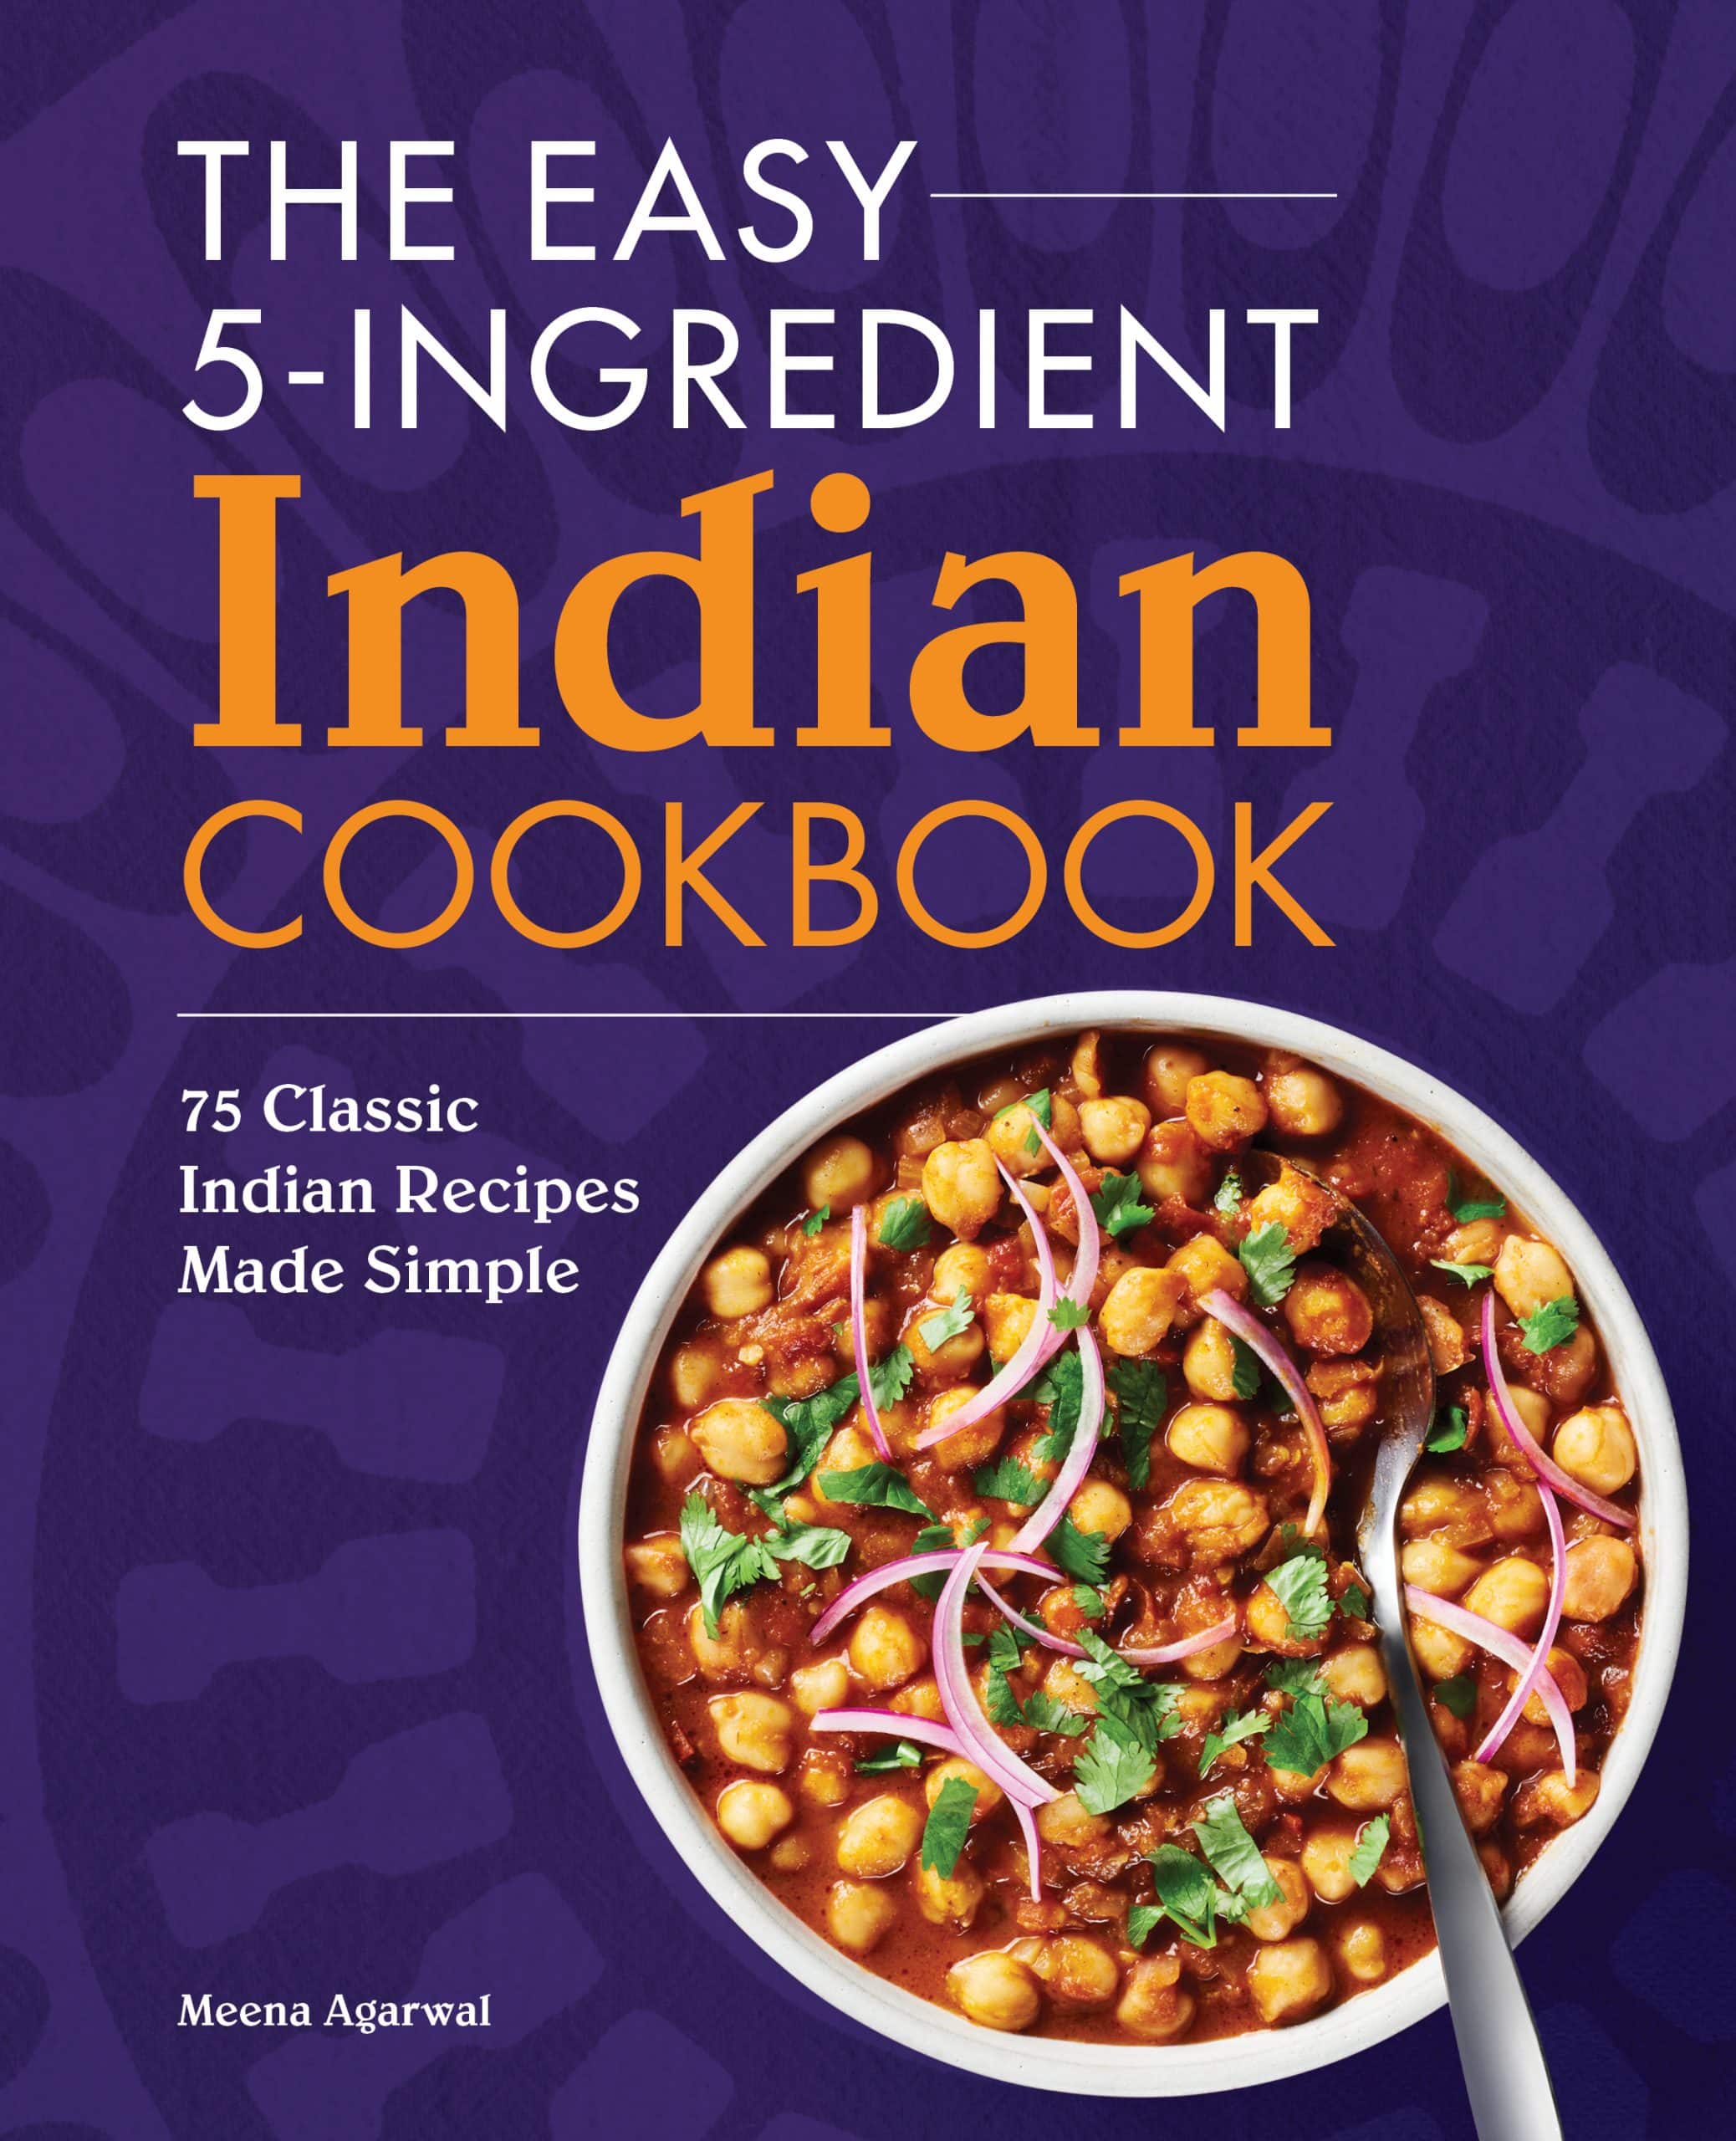 The Easy 5-Ingredient Indian Cookbook by Meena Agarwal